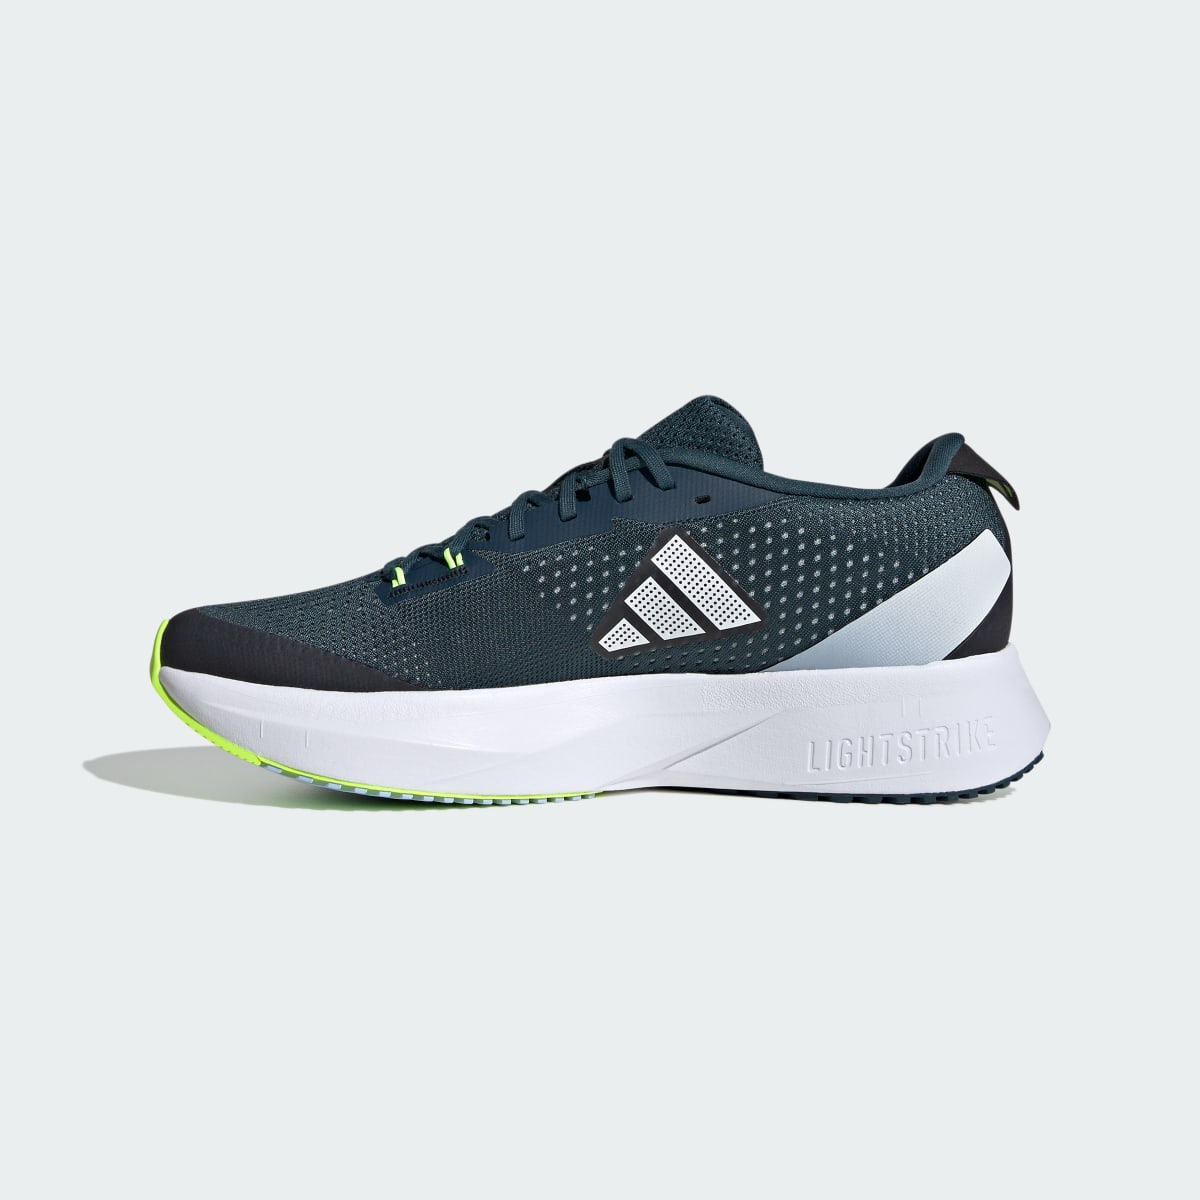 Adidas Adizero SL Running Shoes. 7